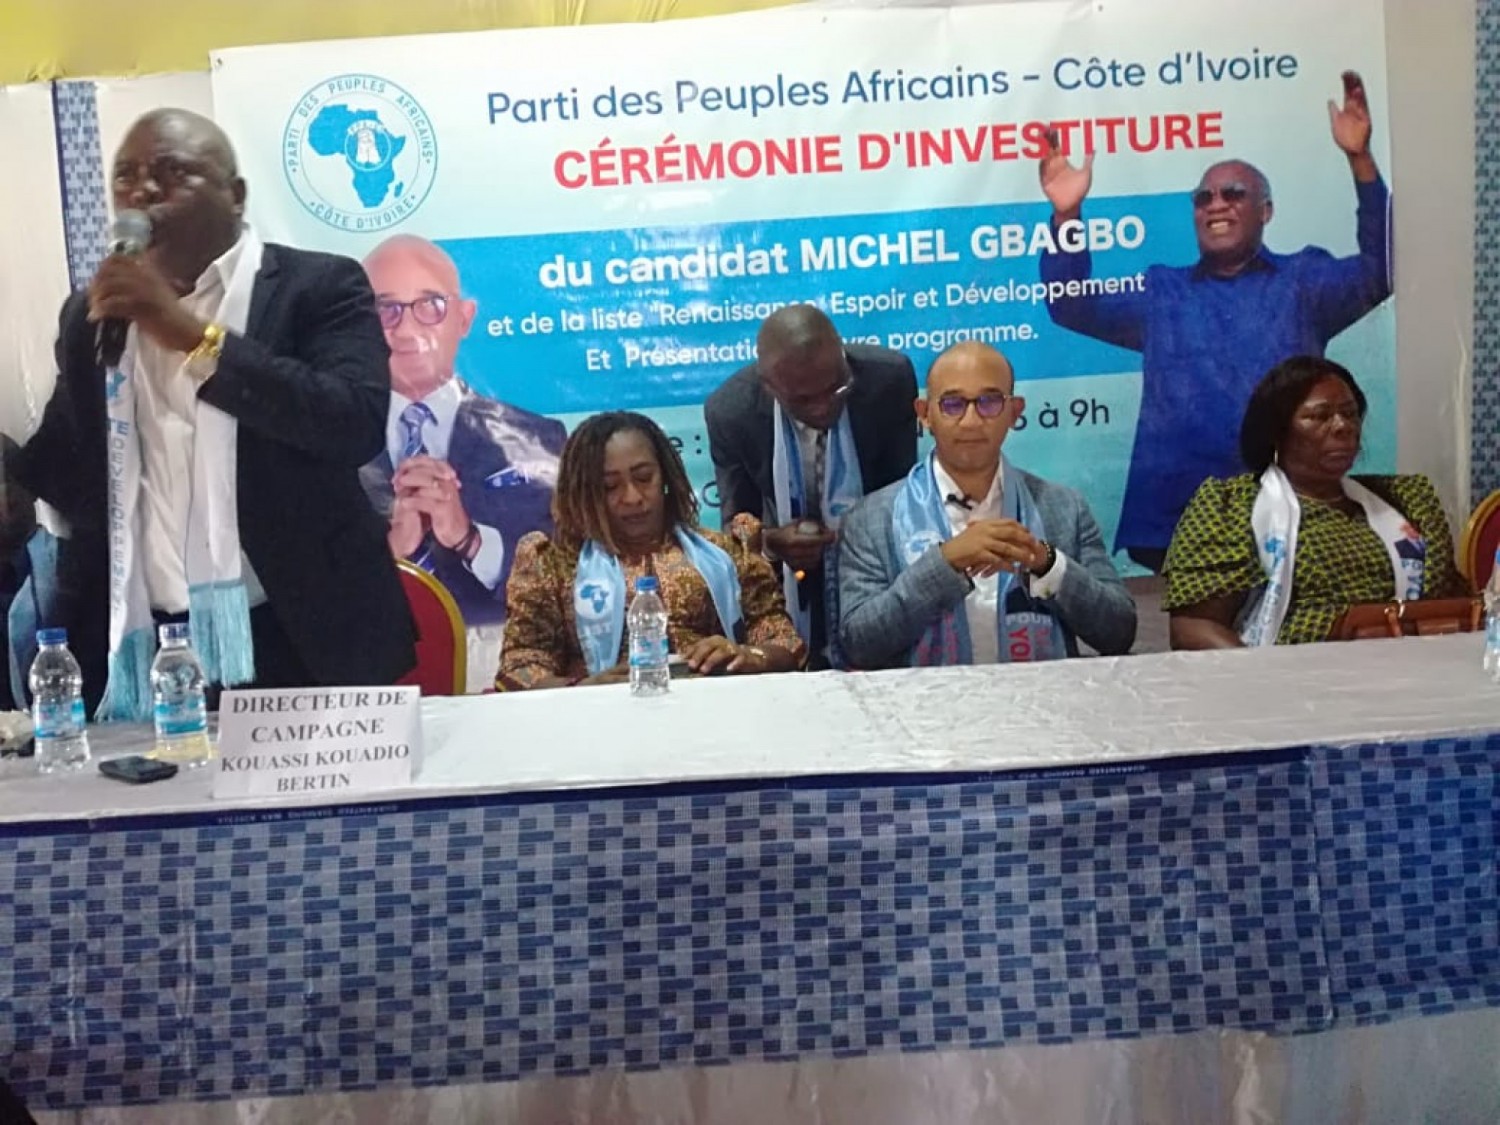 Côte d'Ivoire : Michel Gbagbo investi, Konaté Navigué affirme que l'élection municipale à Yopougon est une bataille entre Gbagbo et Ouattara